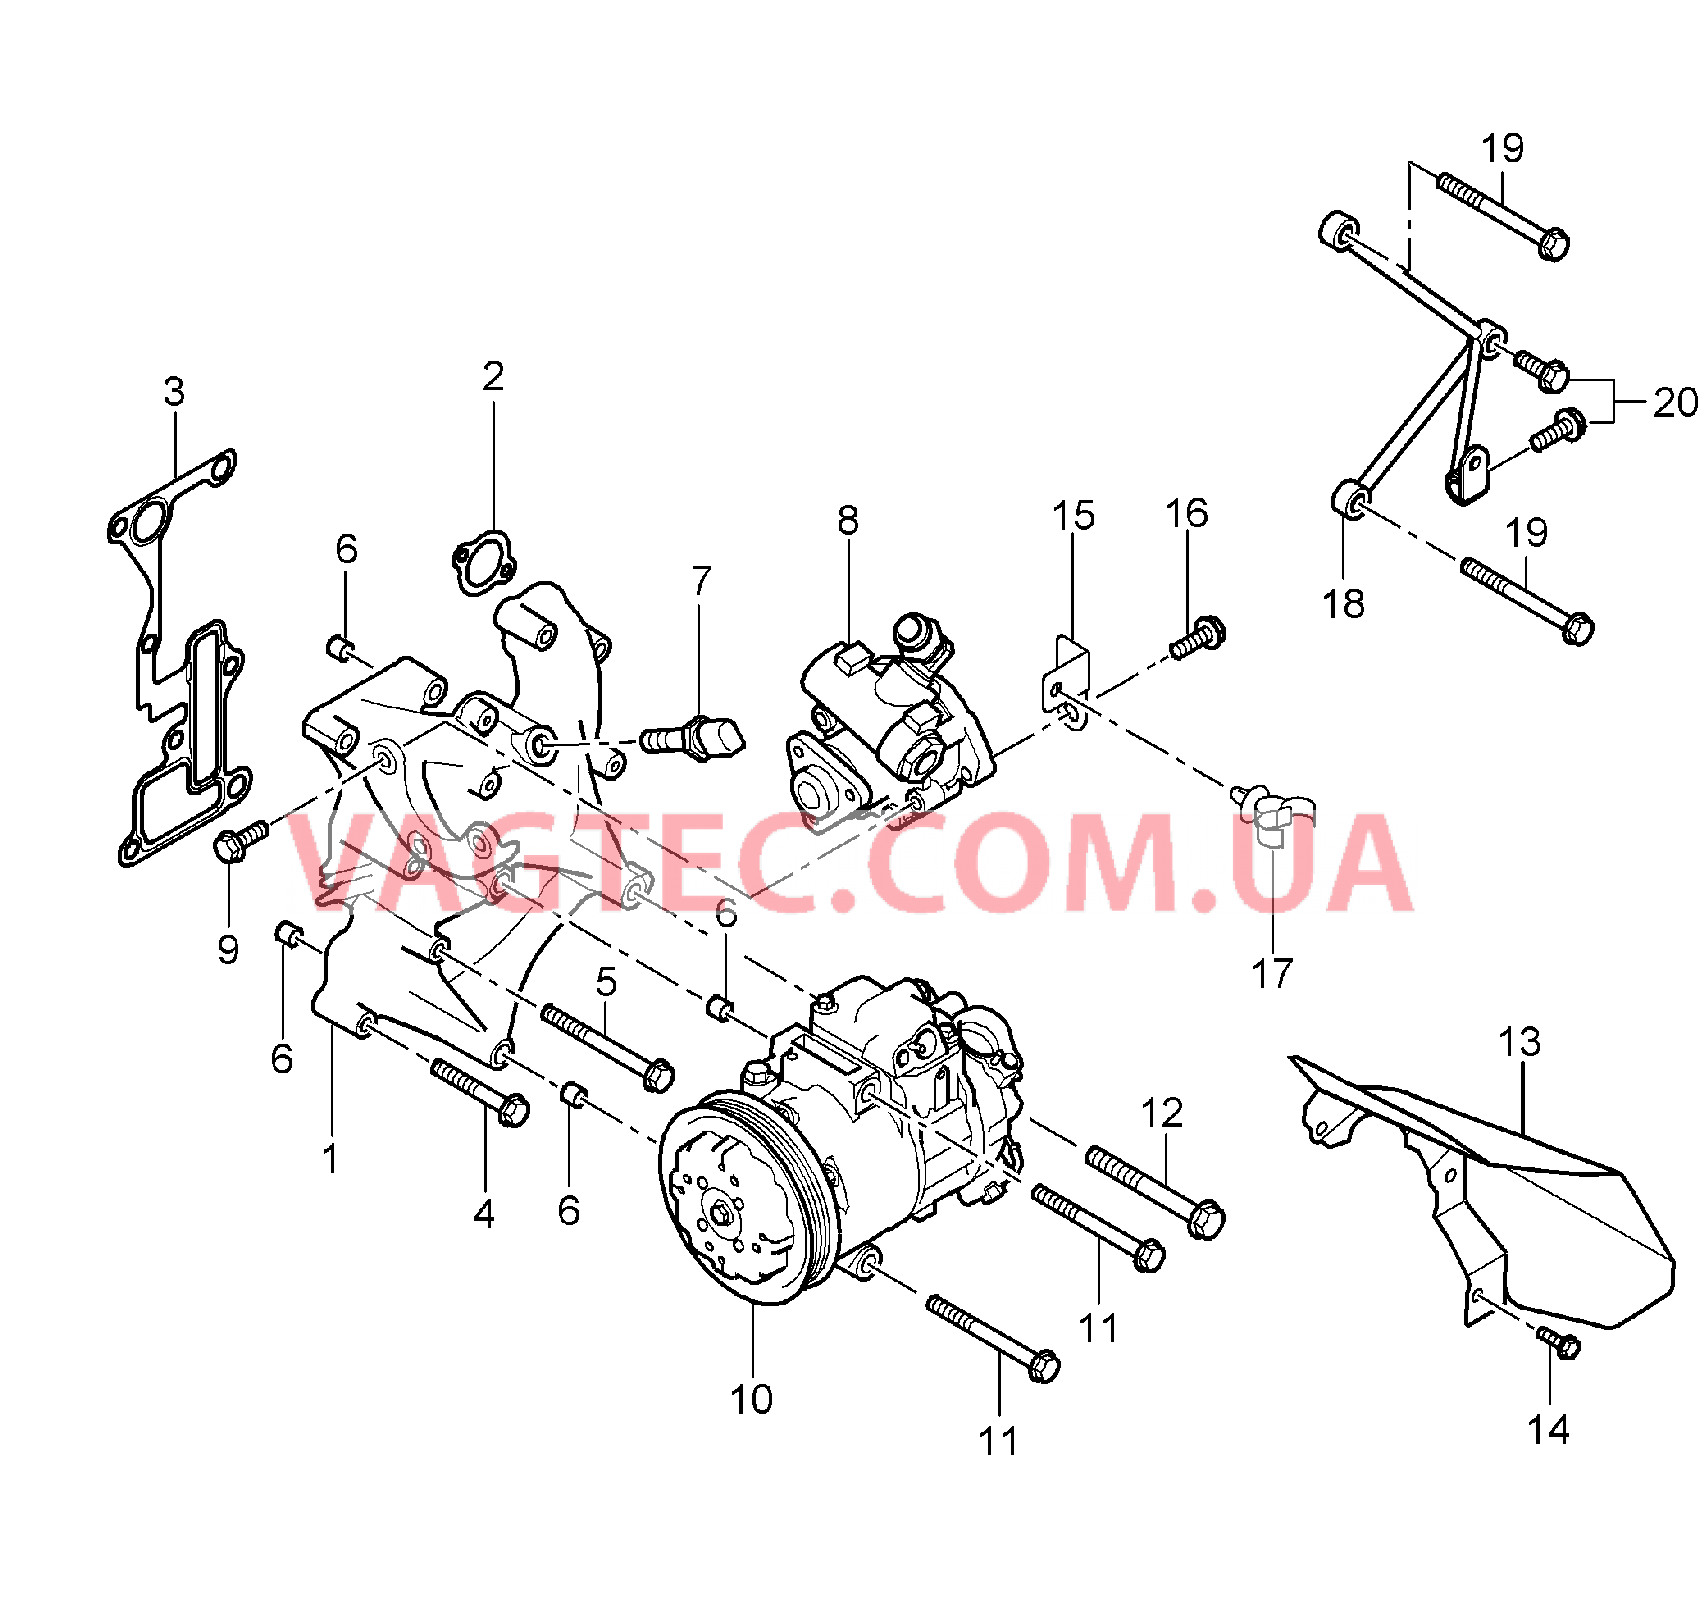 104-015 Консоль, Сервонасос, Компрессор, Кондиционер
						
						M80.01 для PORSCHE CarreraGT 2004-2006